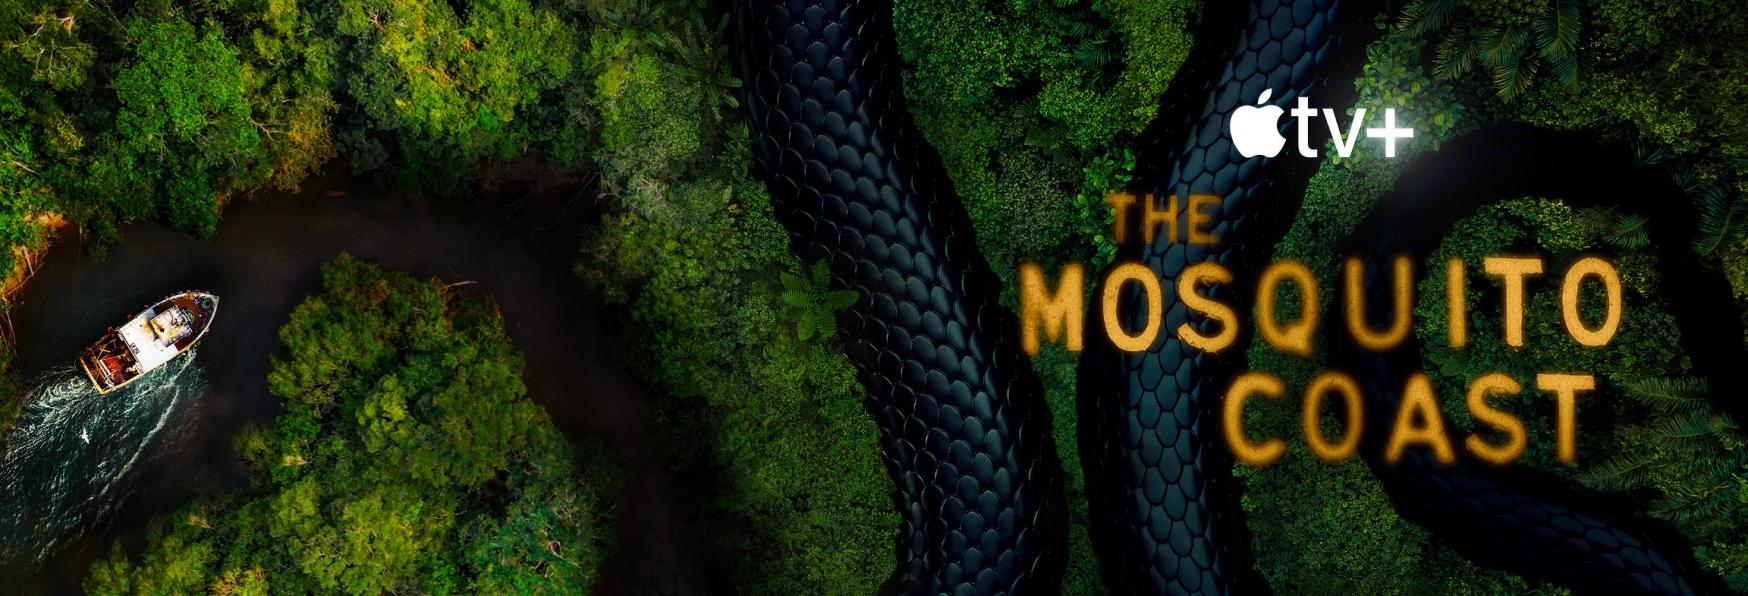 The Mosquito Coast 3 non ci sarà! Apple Cancella la Serie TV dopo due Stagioni